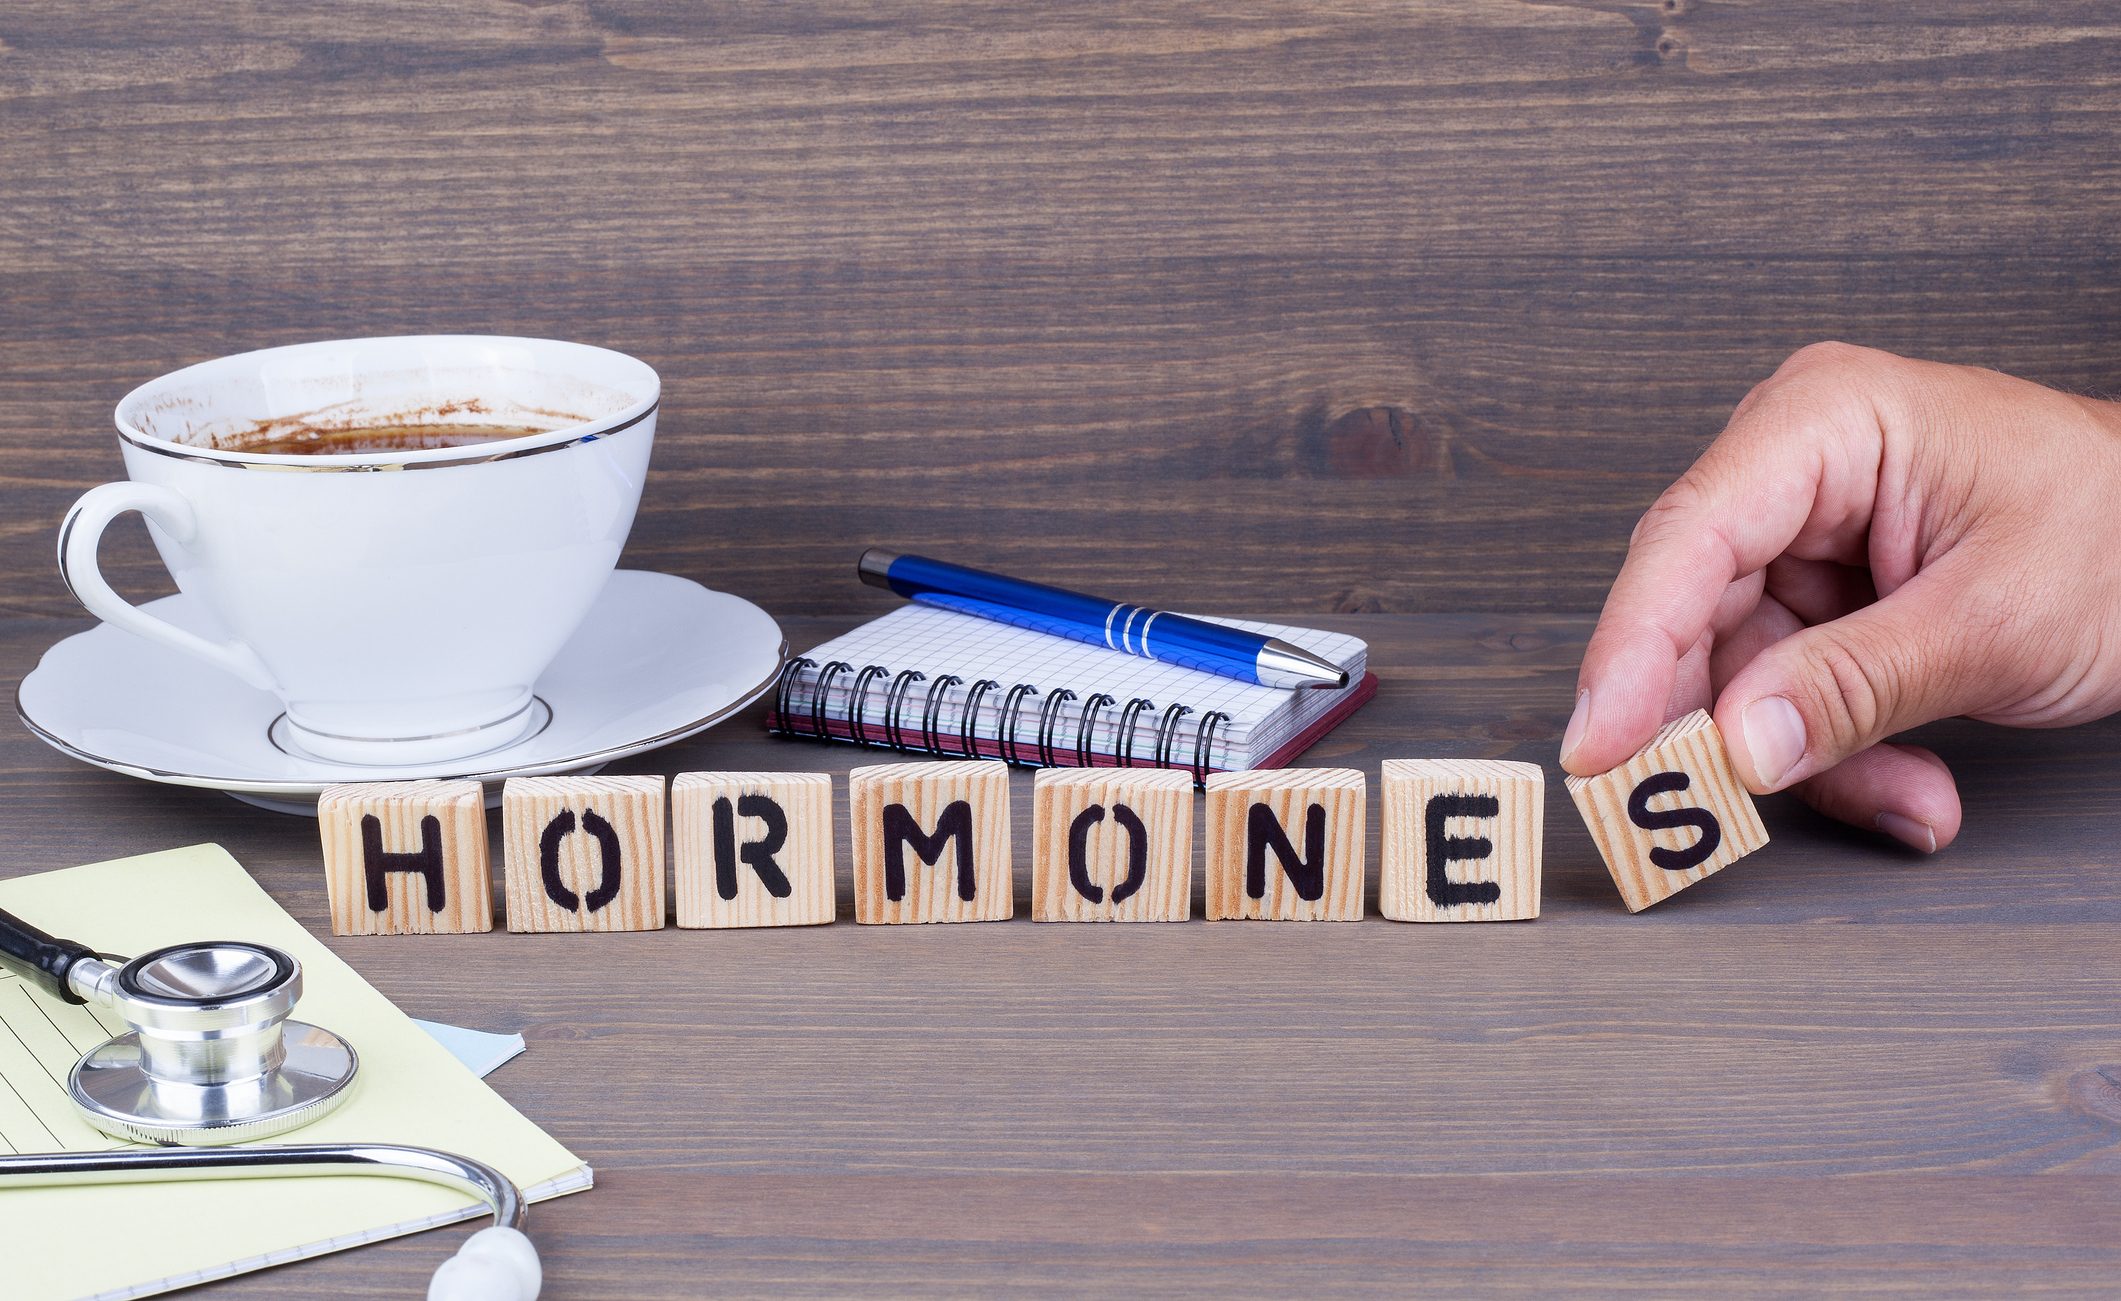 Hormones!